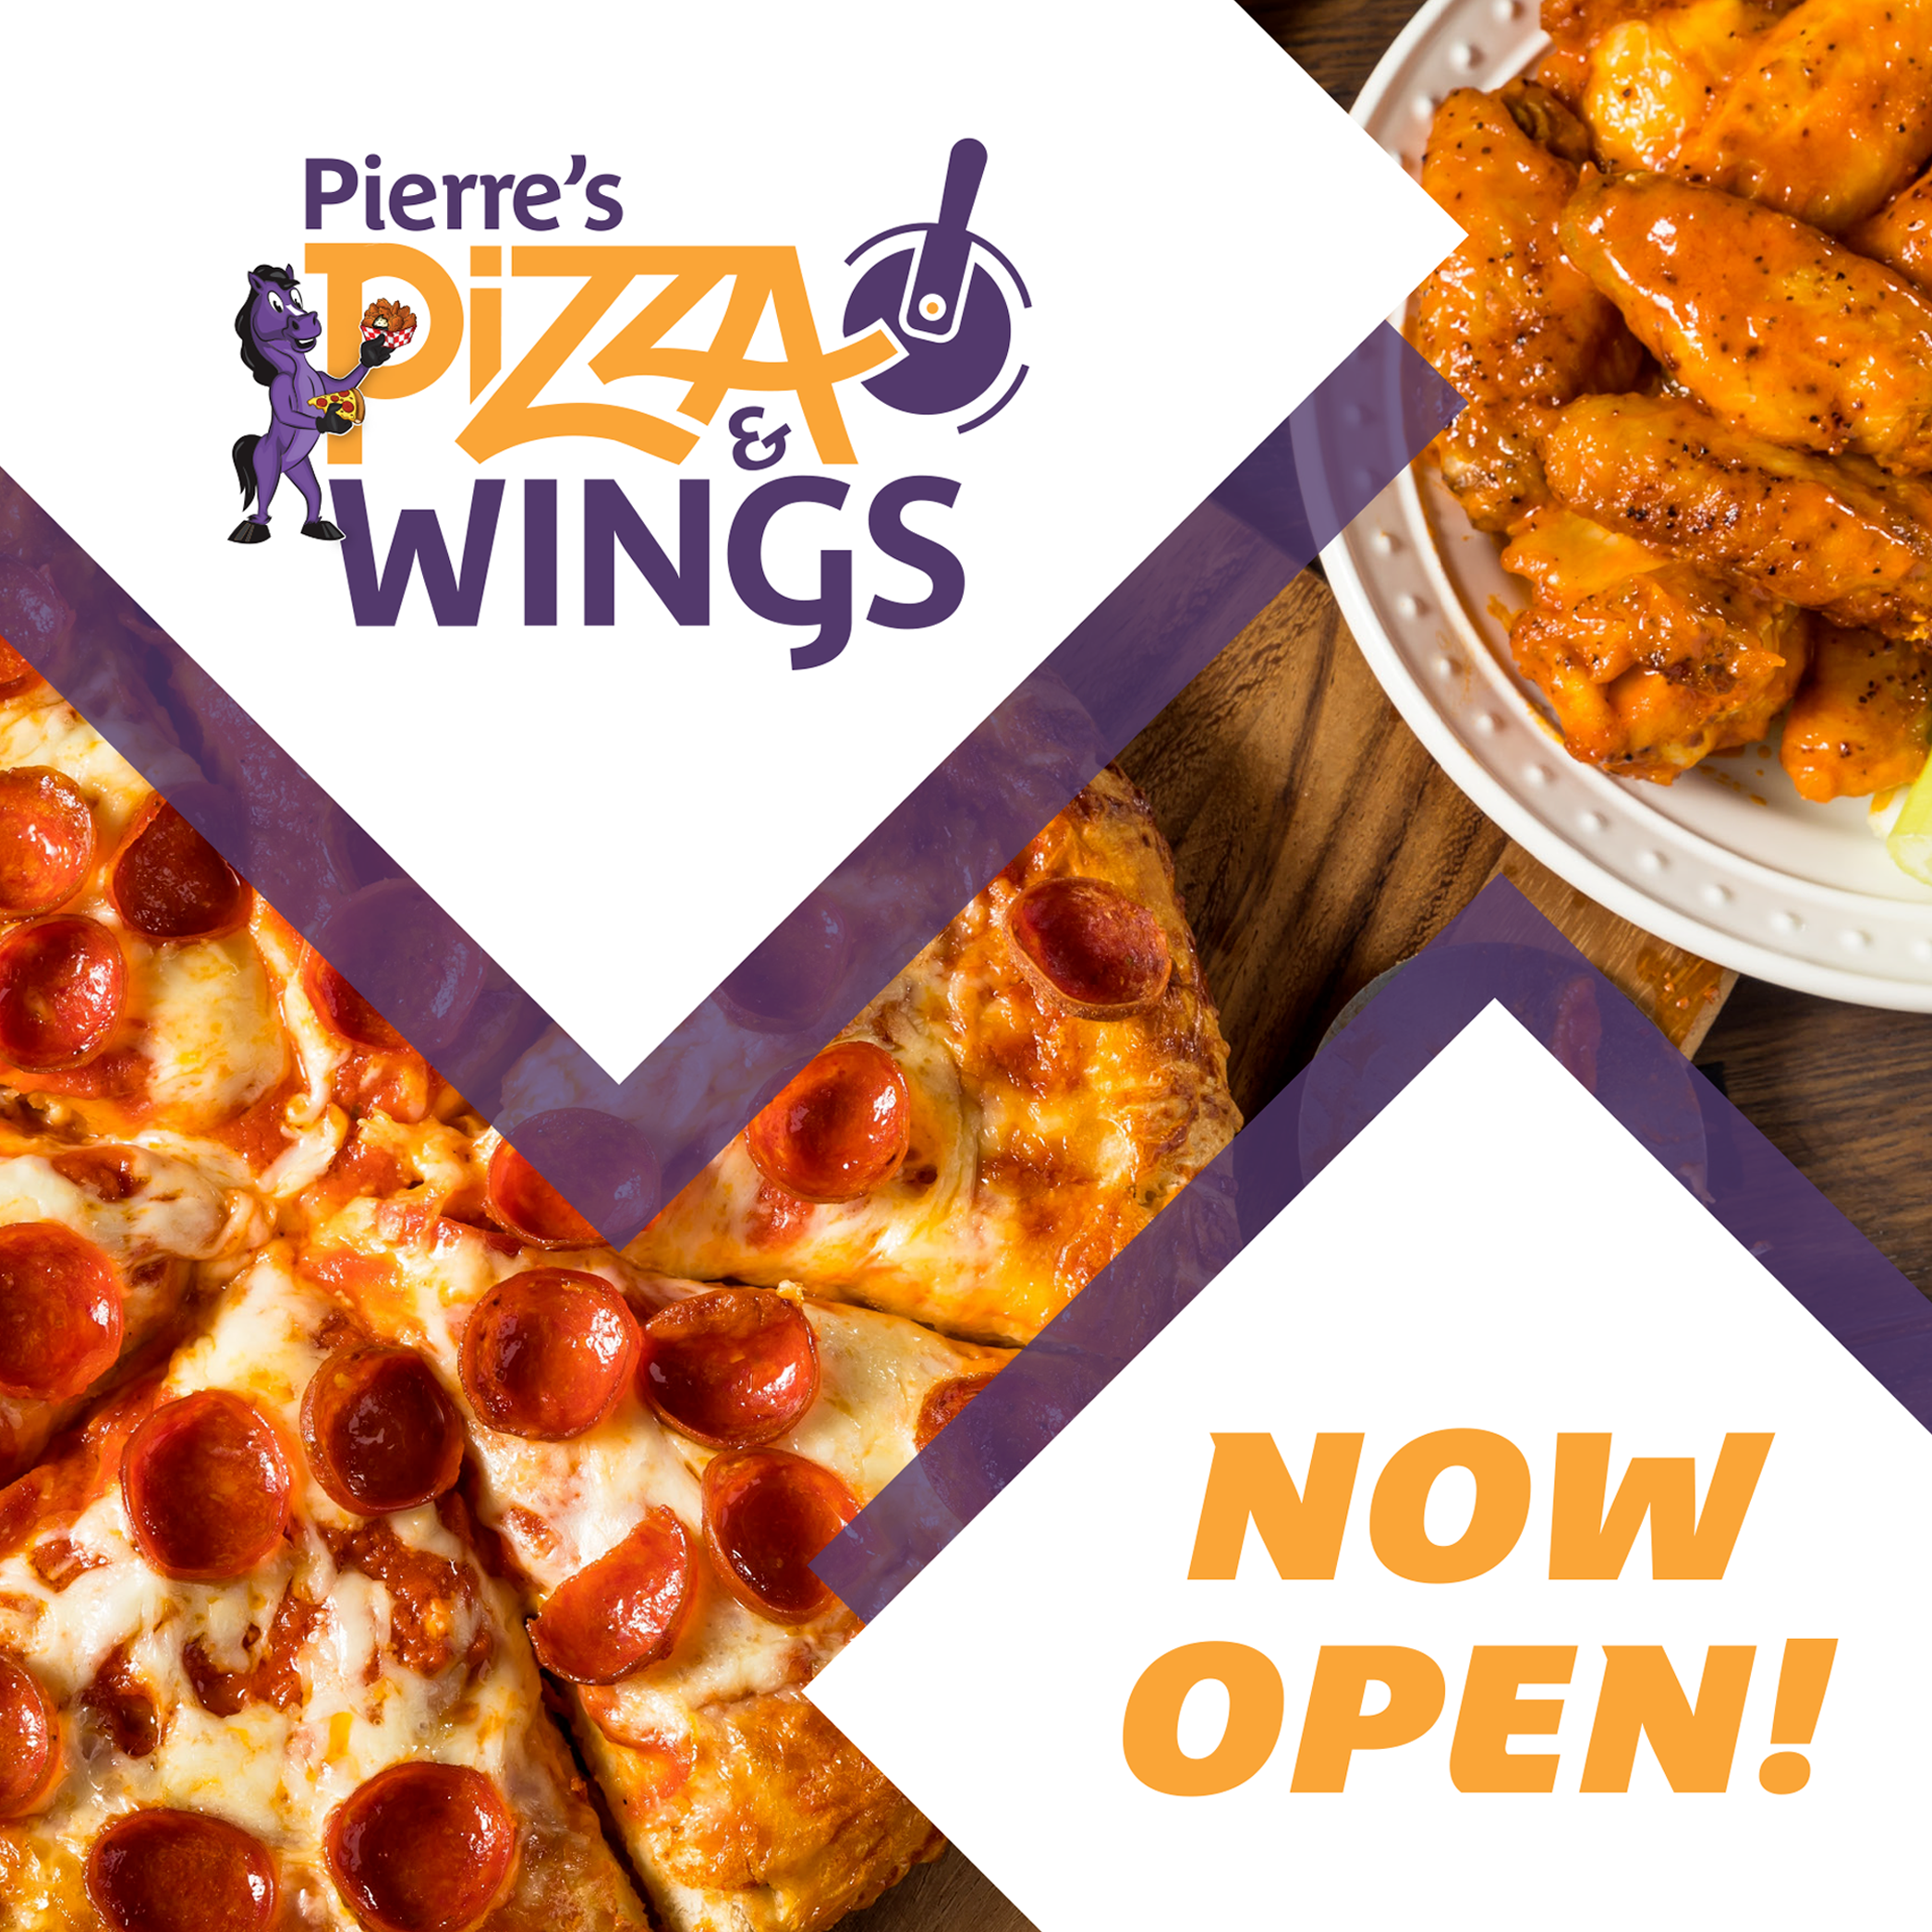 Pierre's Pizza & Wings - Opelousas, LA 70570 - (866)472-2466 | ShowMeLocal.com